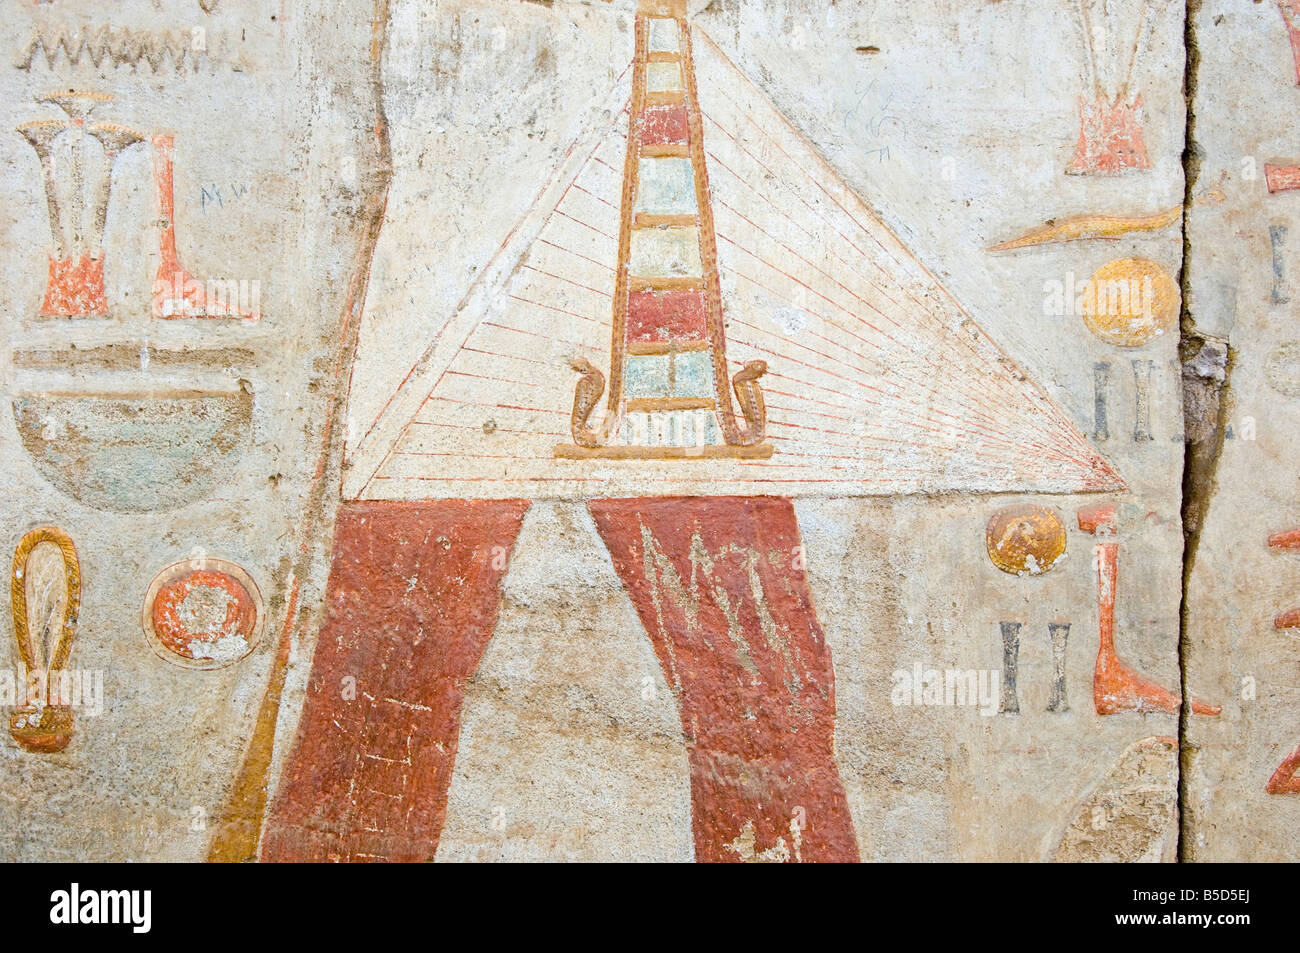 Detalle de la pintura de la pared del templo egipcio rescatado de Nubia de tierra inundada por el lago Nasser, el Museo Nacional, Jartum, Sudán Foto de stock